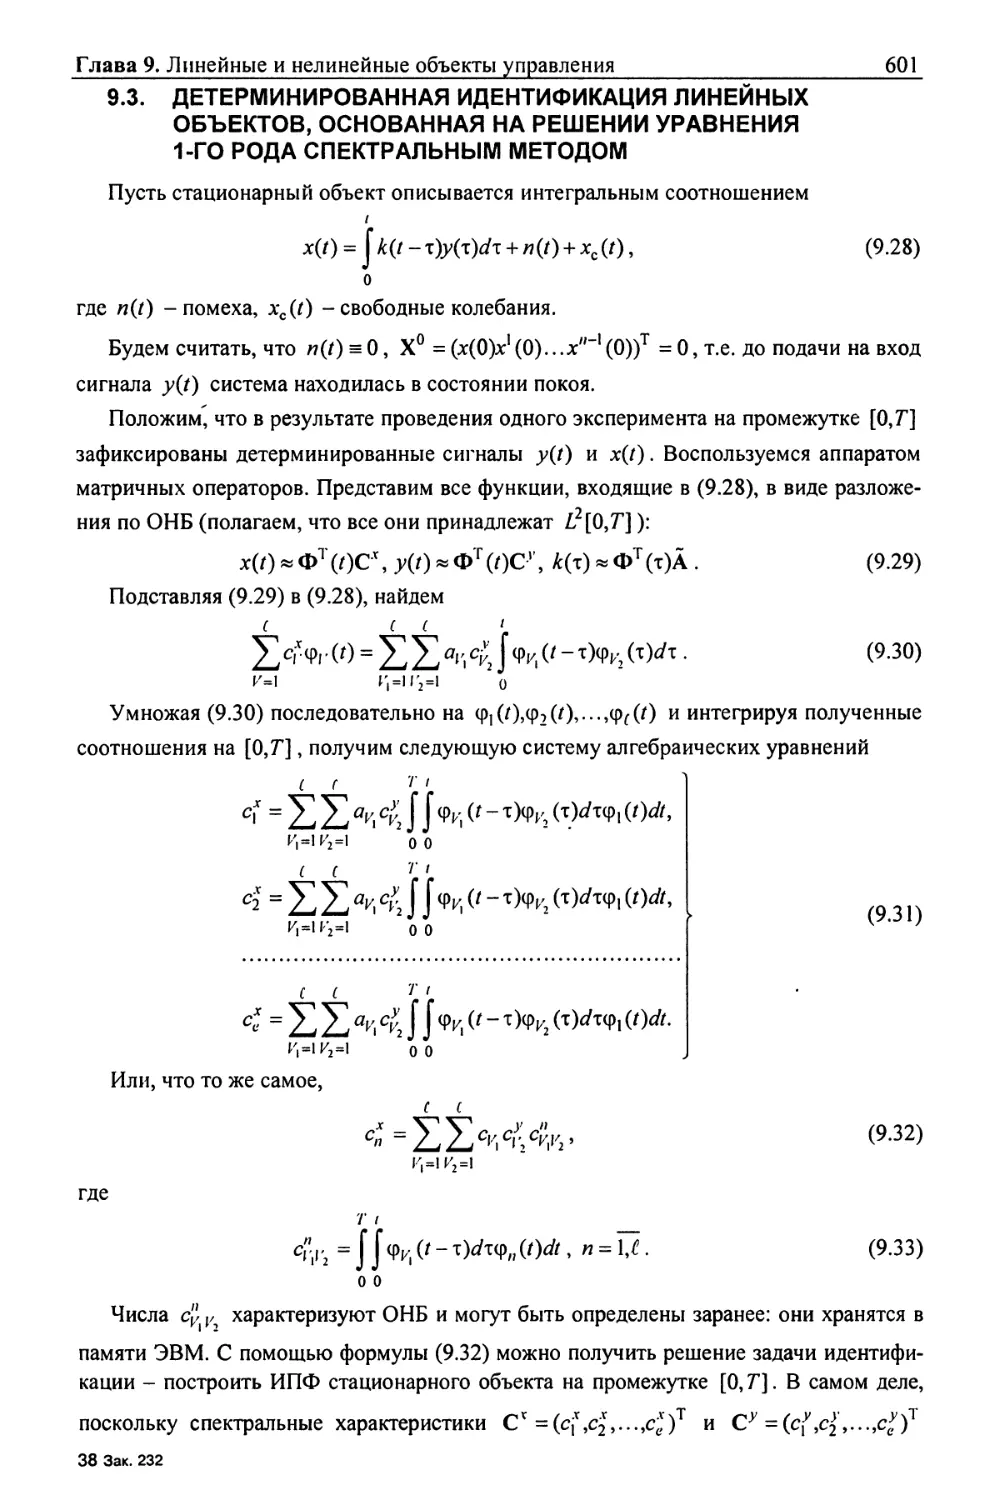 9.3. Детерминированная идентификация линейных объектов, основанная на решении уравнения 1-го рода спектральным методом